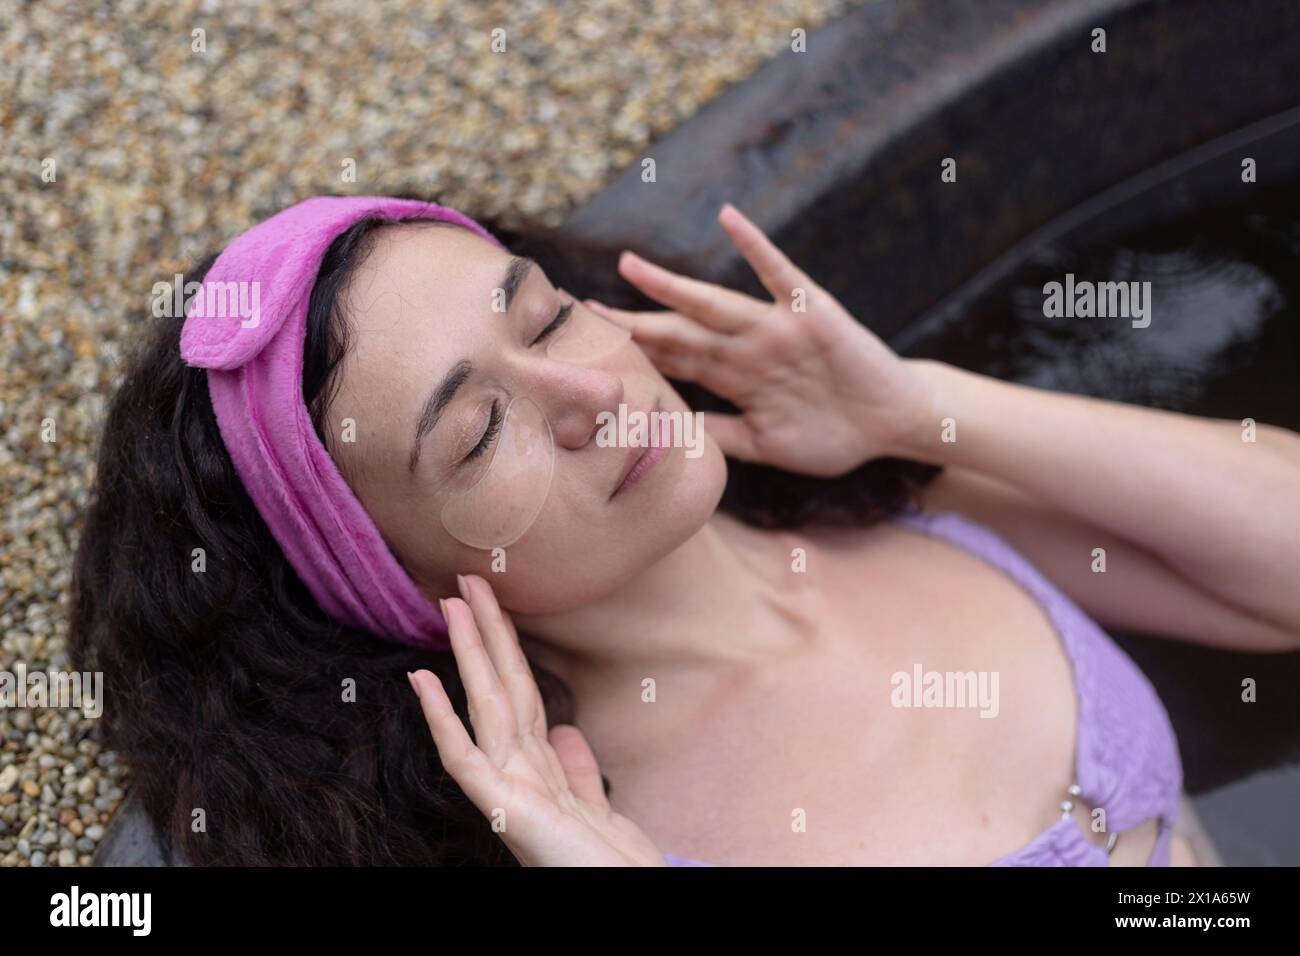 Une femme avec un bandeau rose posant inn spa avec des patchs pour les yeux Banque D'Images